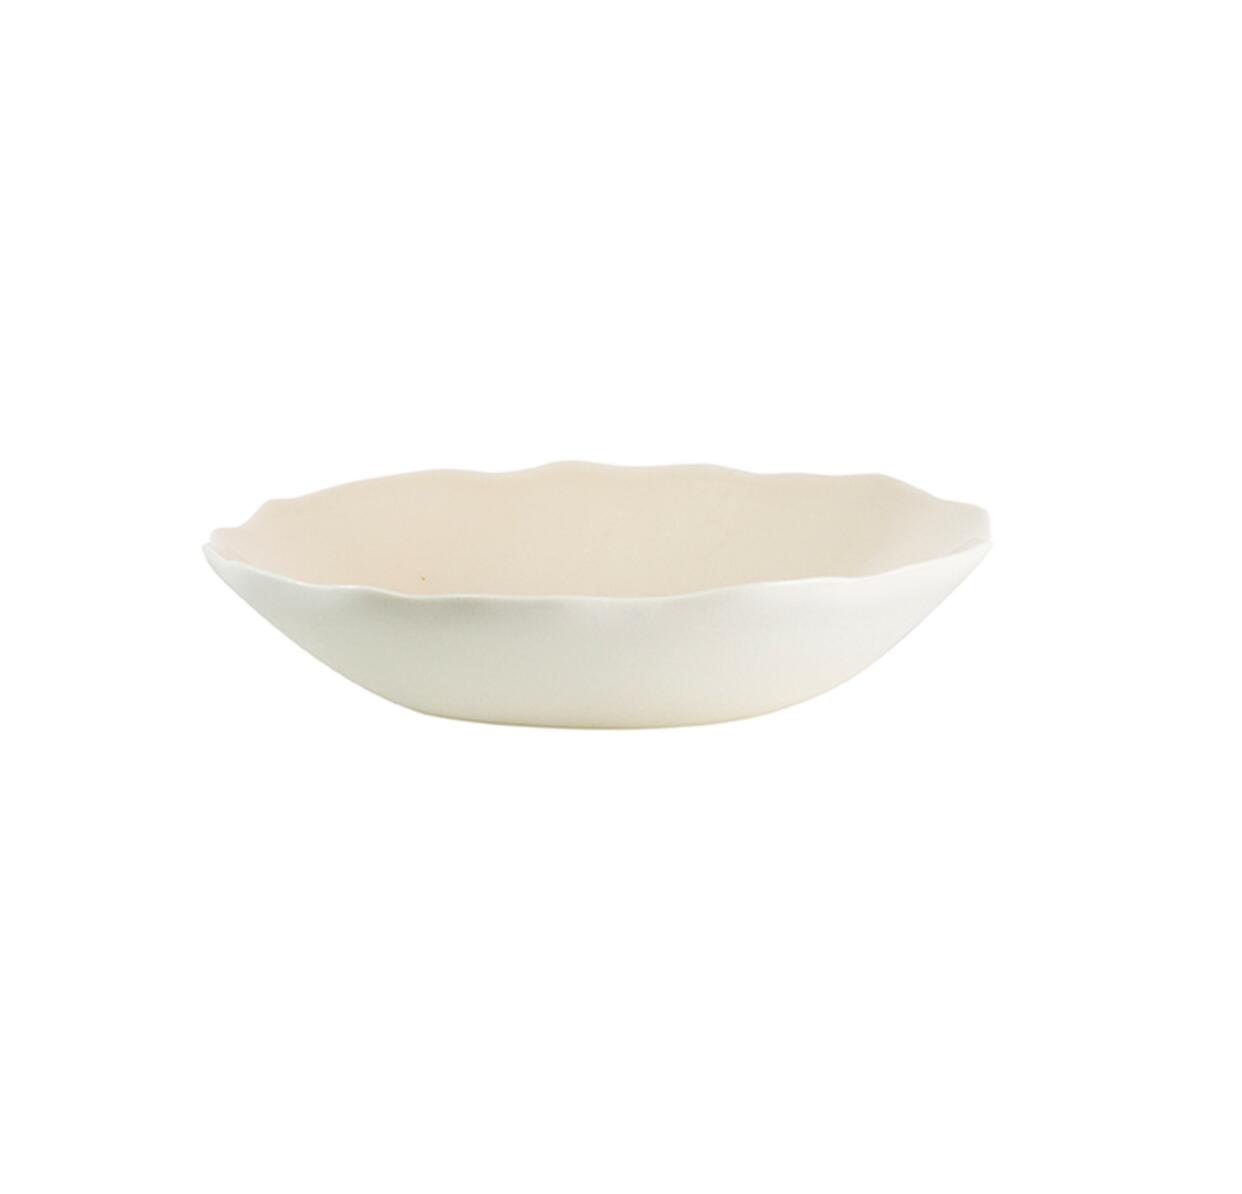 soup plate plume nude ceramic manufacturer